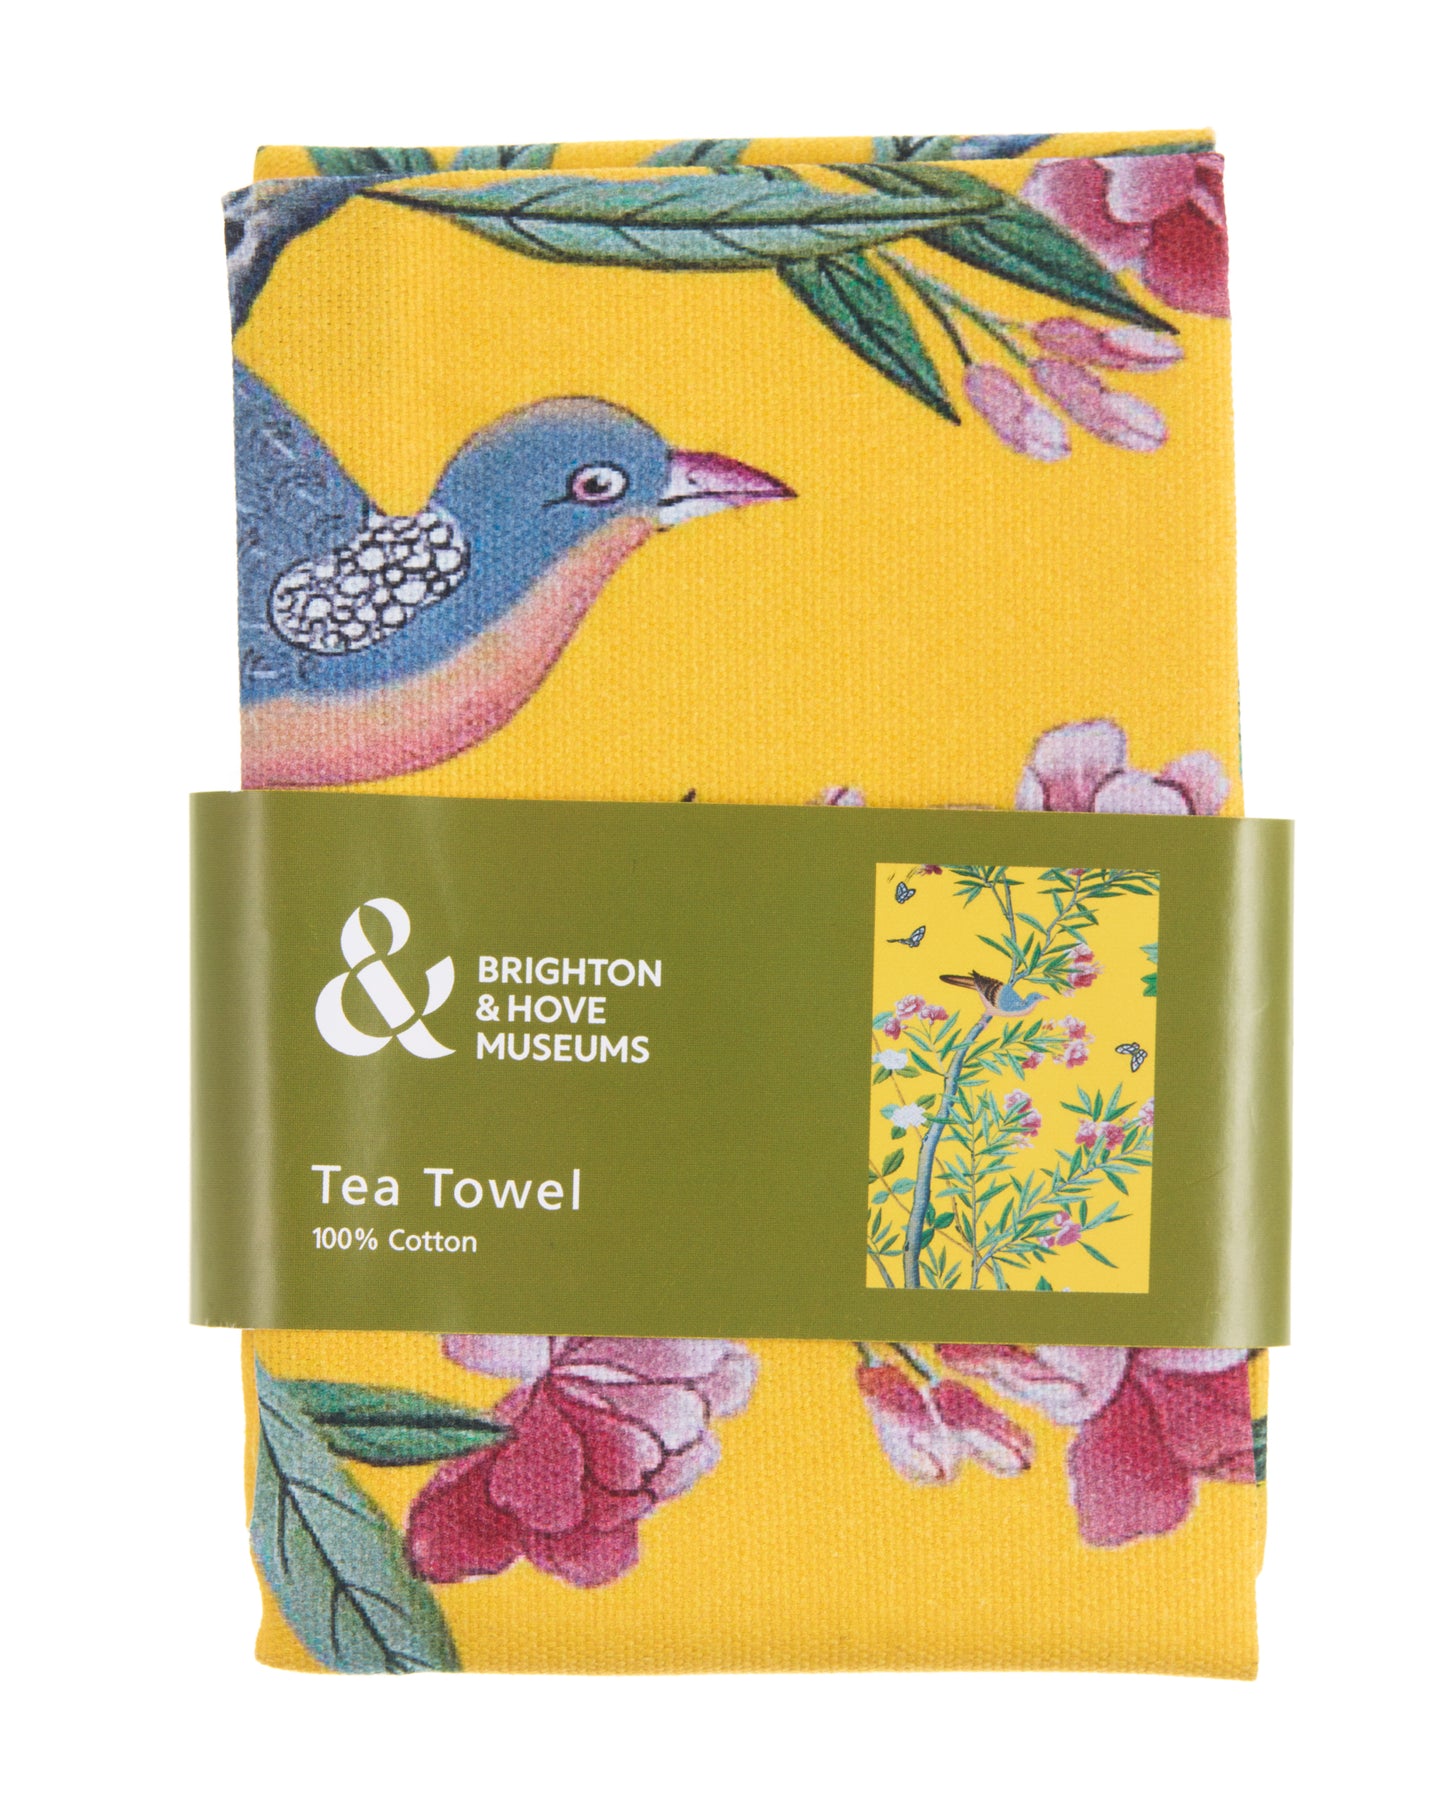 Tea Towel - Queen Victoria's Bedroom